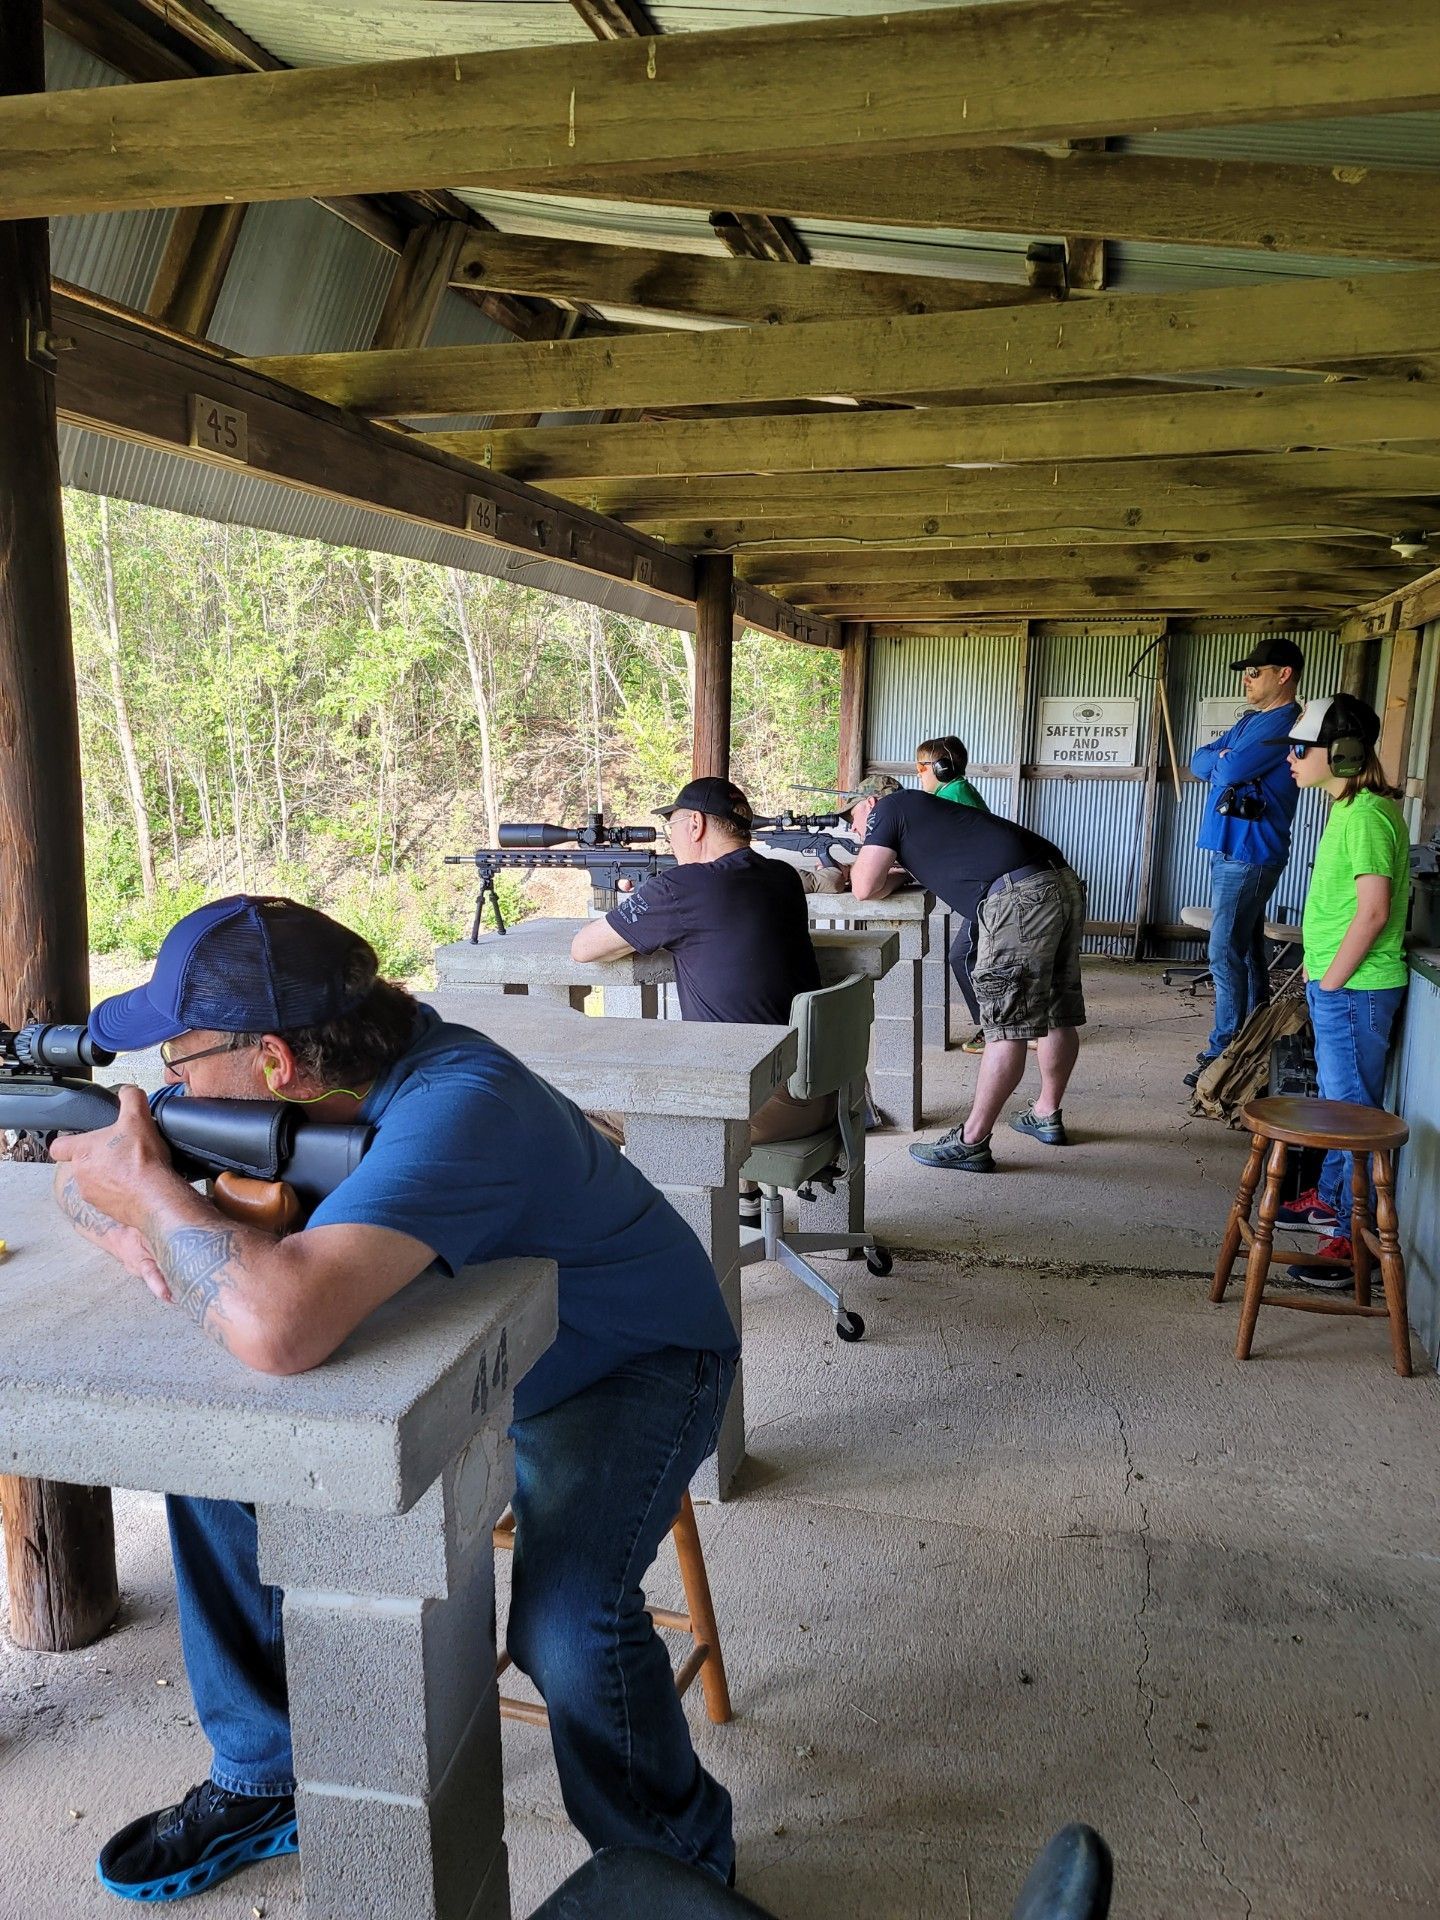 several men at gun range line holding rifles aimed down range